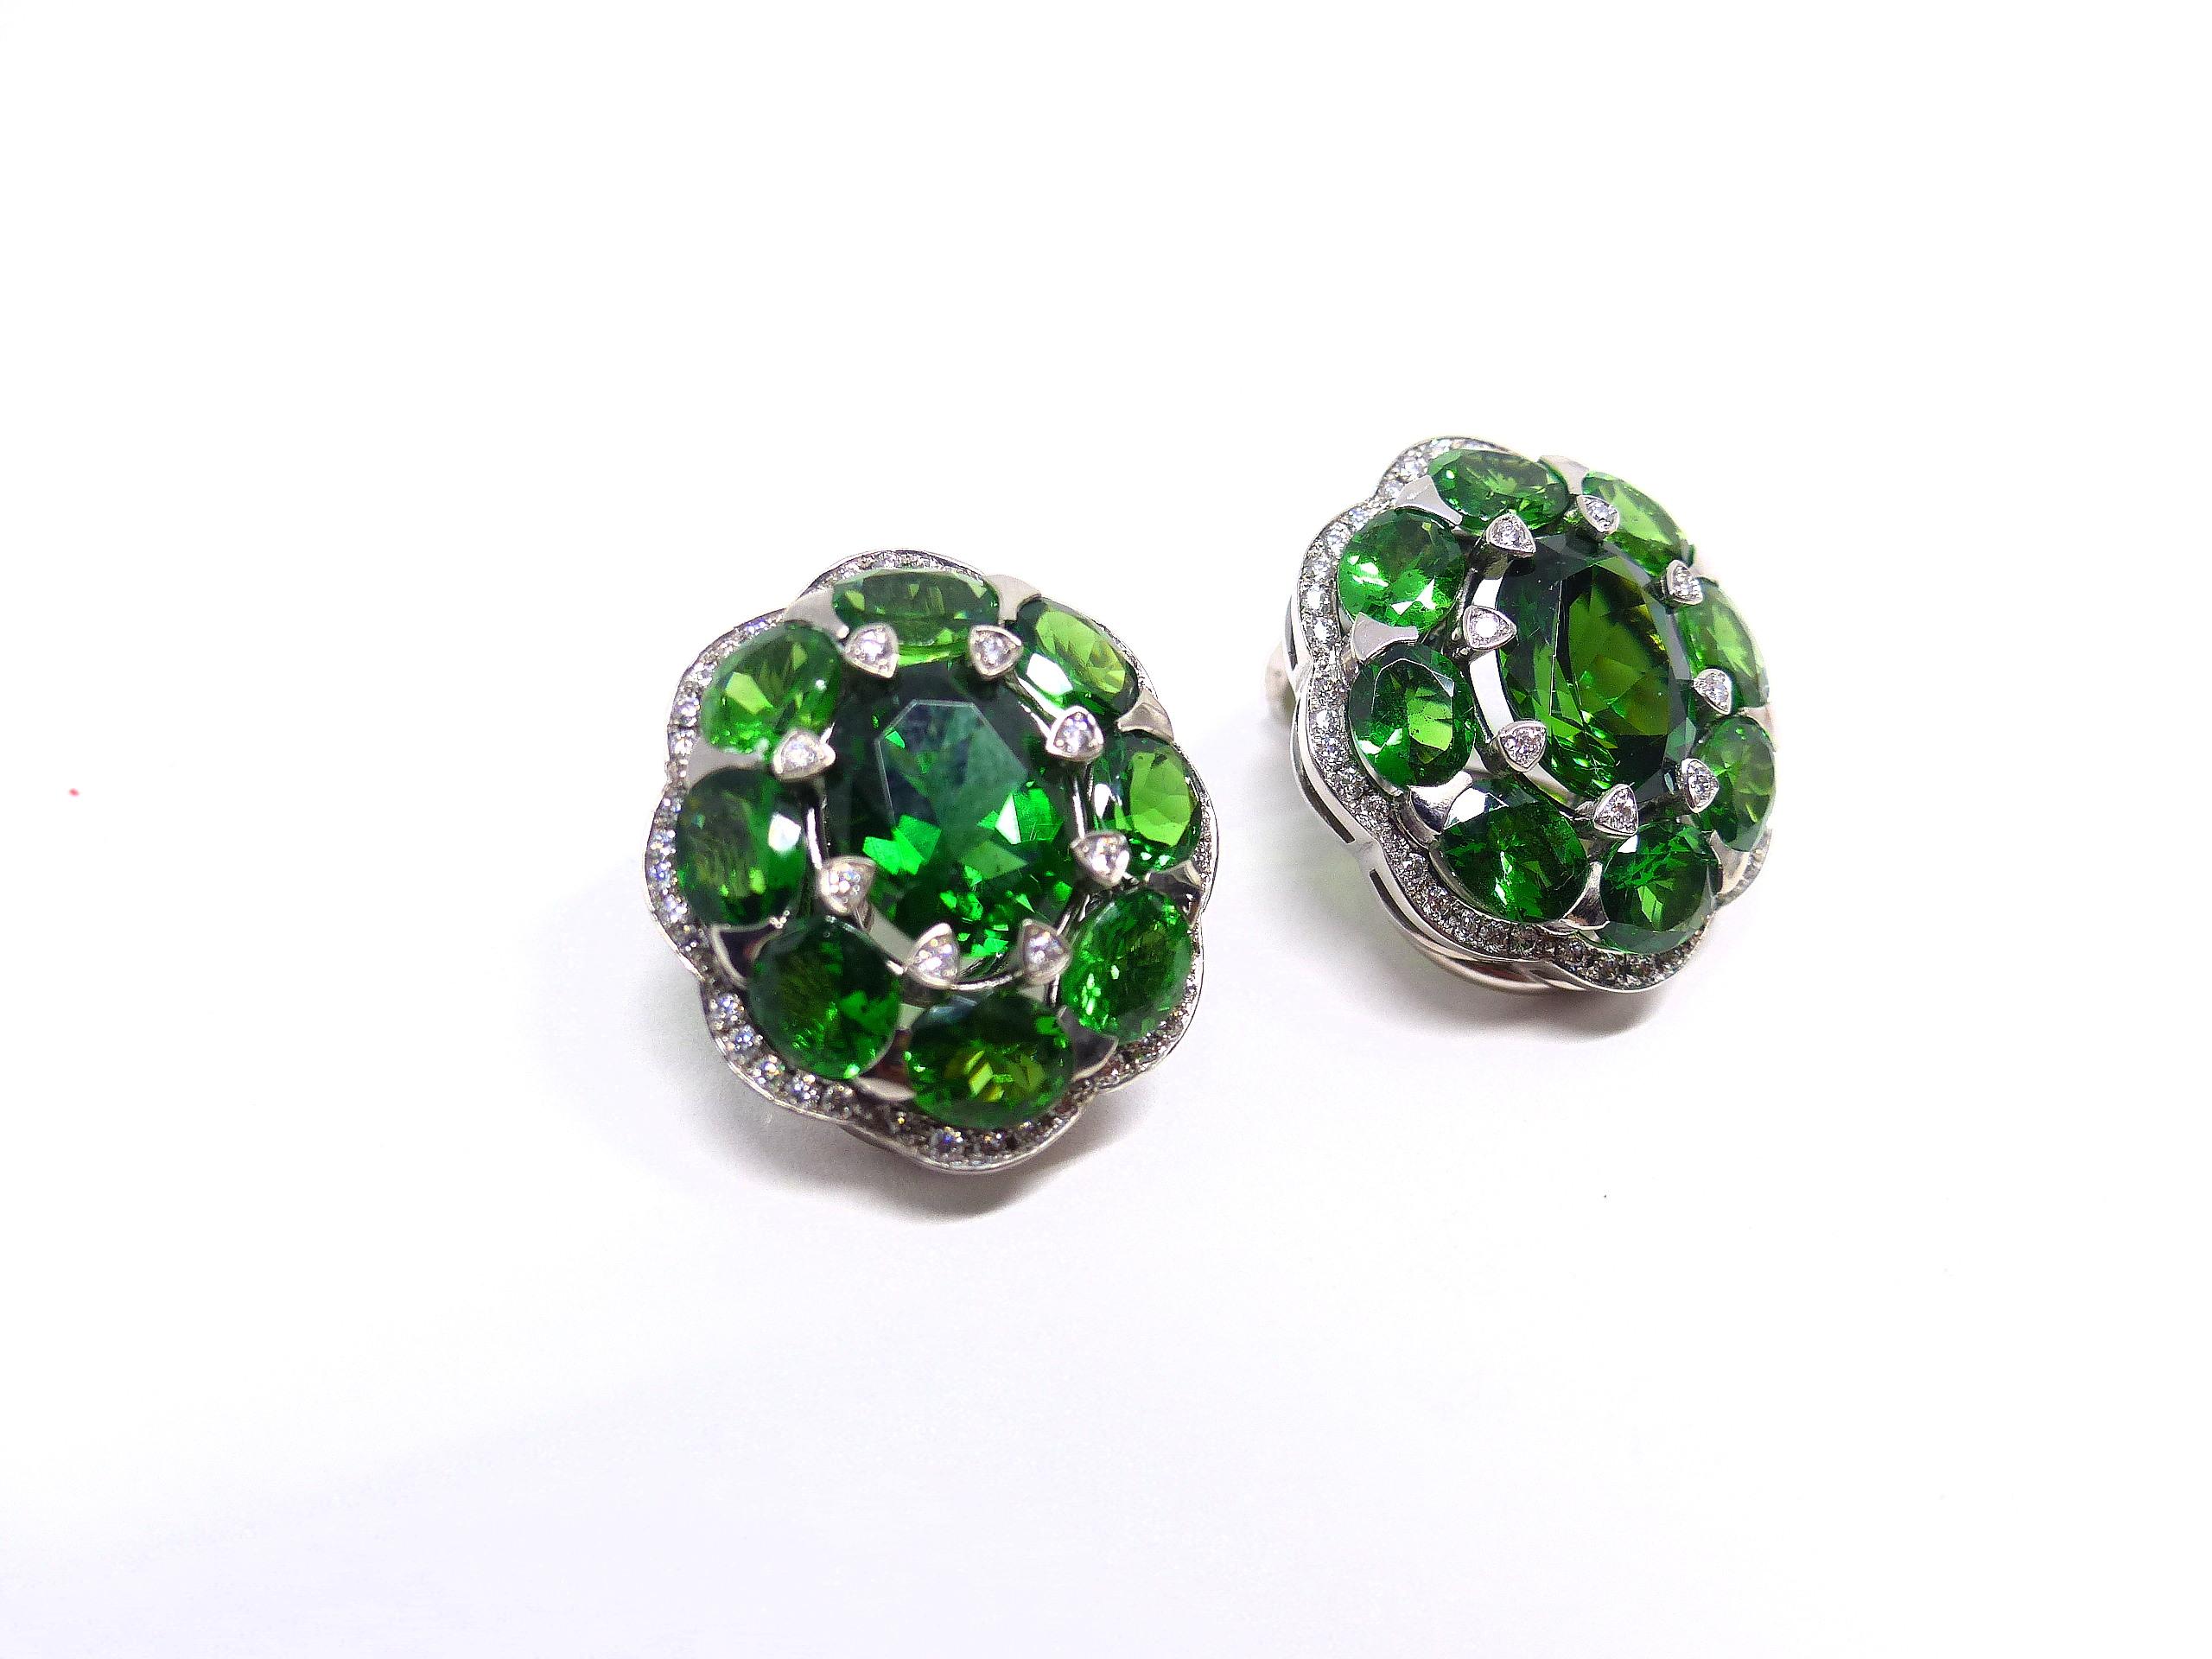 Thomas Leyser est réputé pour ses créations de bijoux contemporains utilisant des pierres précieuses fines.

Cette paire de boucles d'oreilles en or blanc 18 carats (15,12 g) est sertie de 2 chromatotourmalines de couleur vert intense (ovale, 9x7